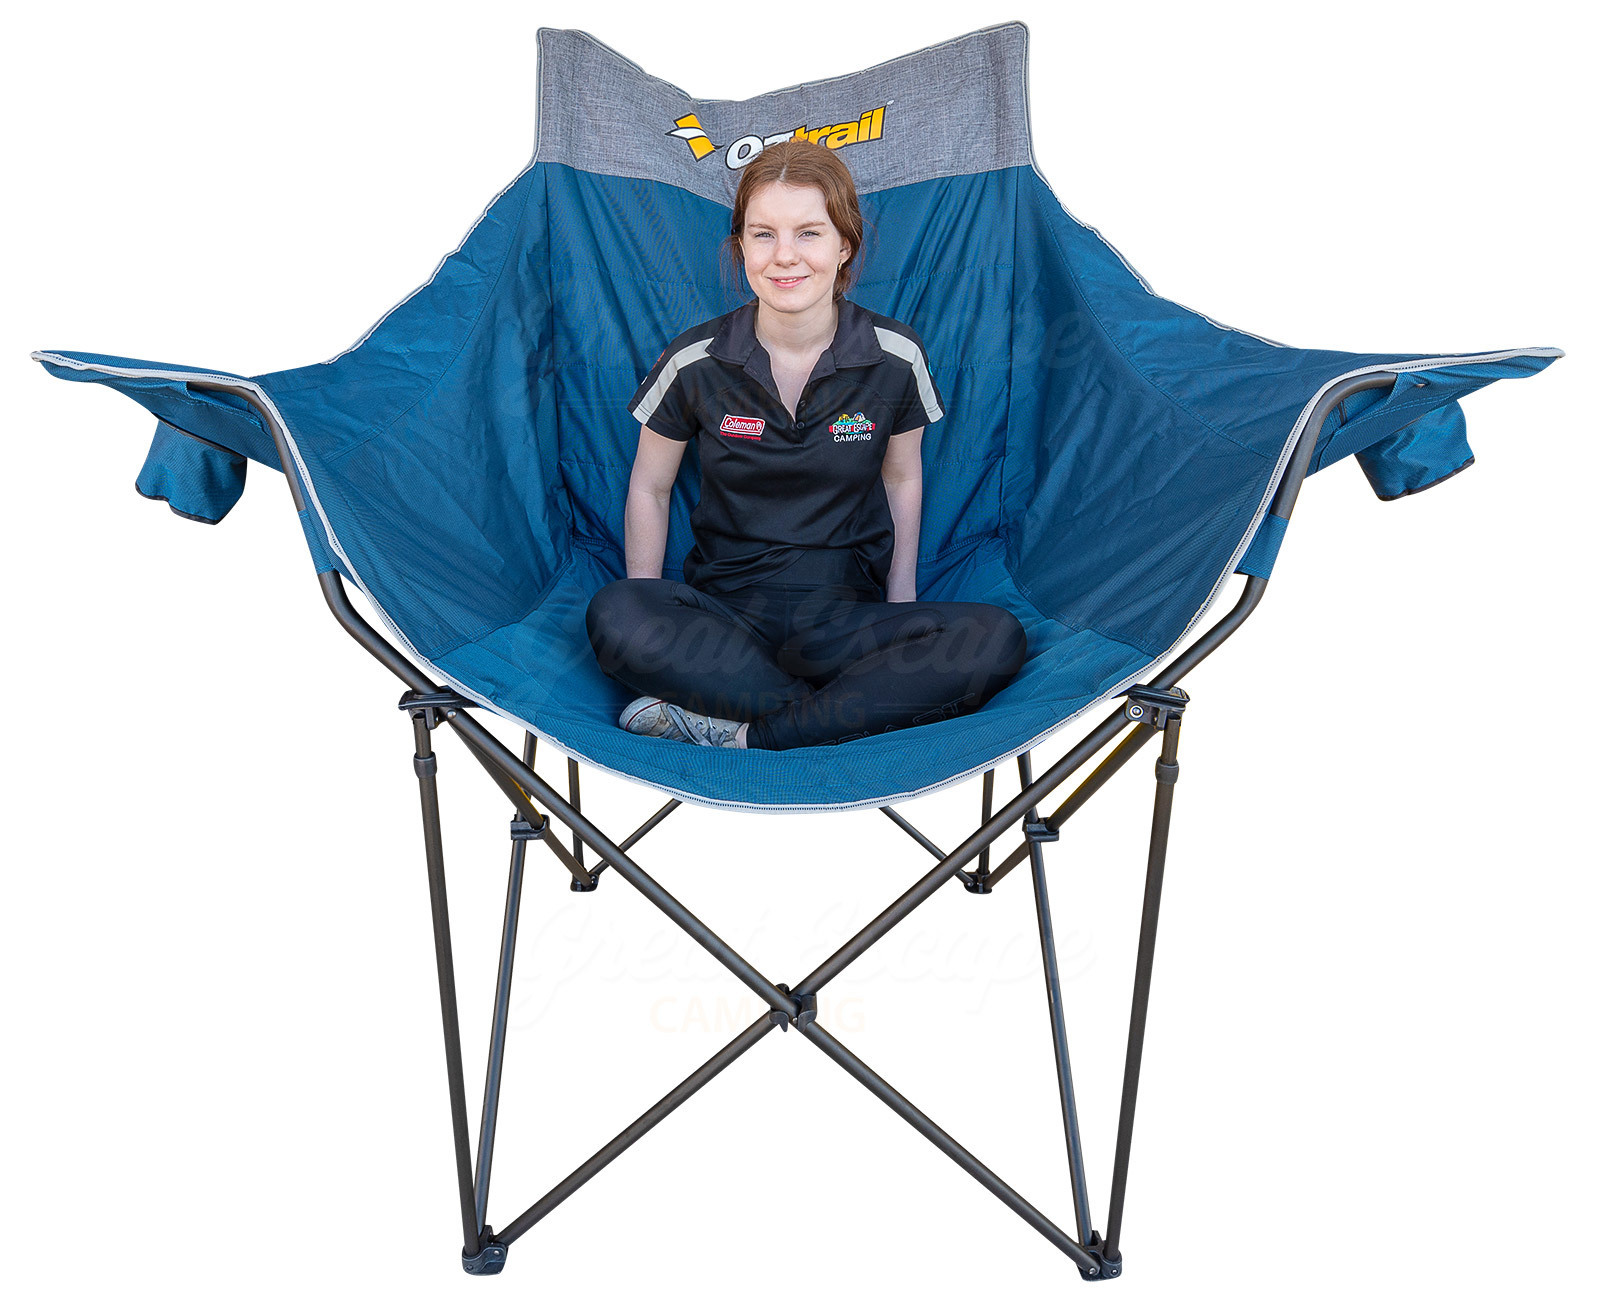 oztrail camping high chair